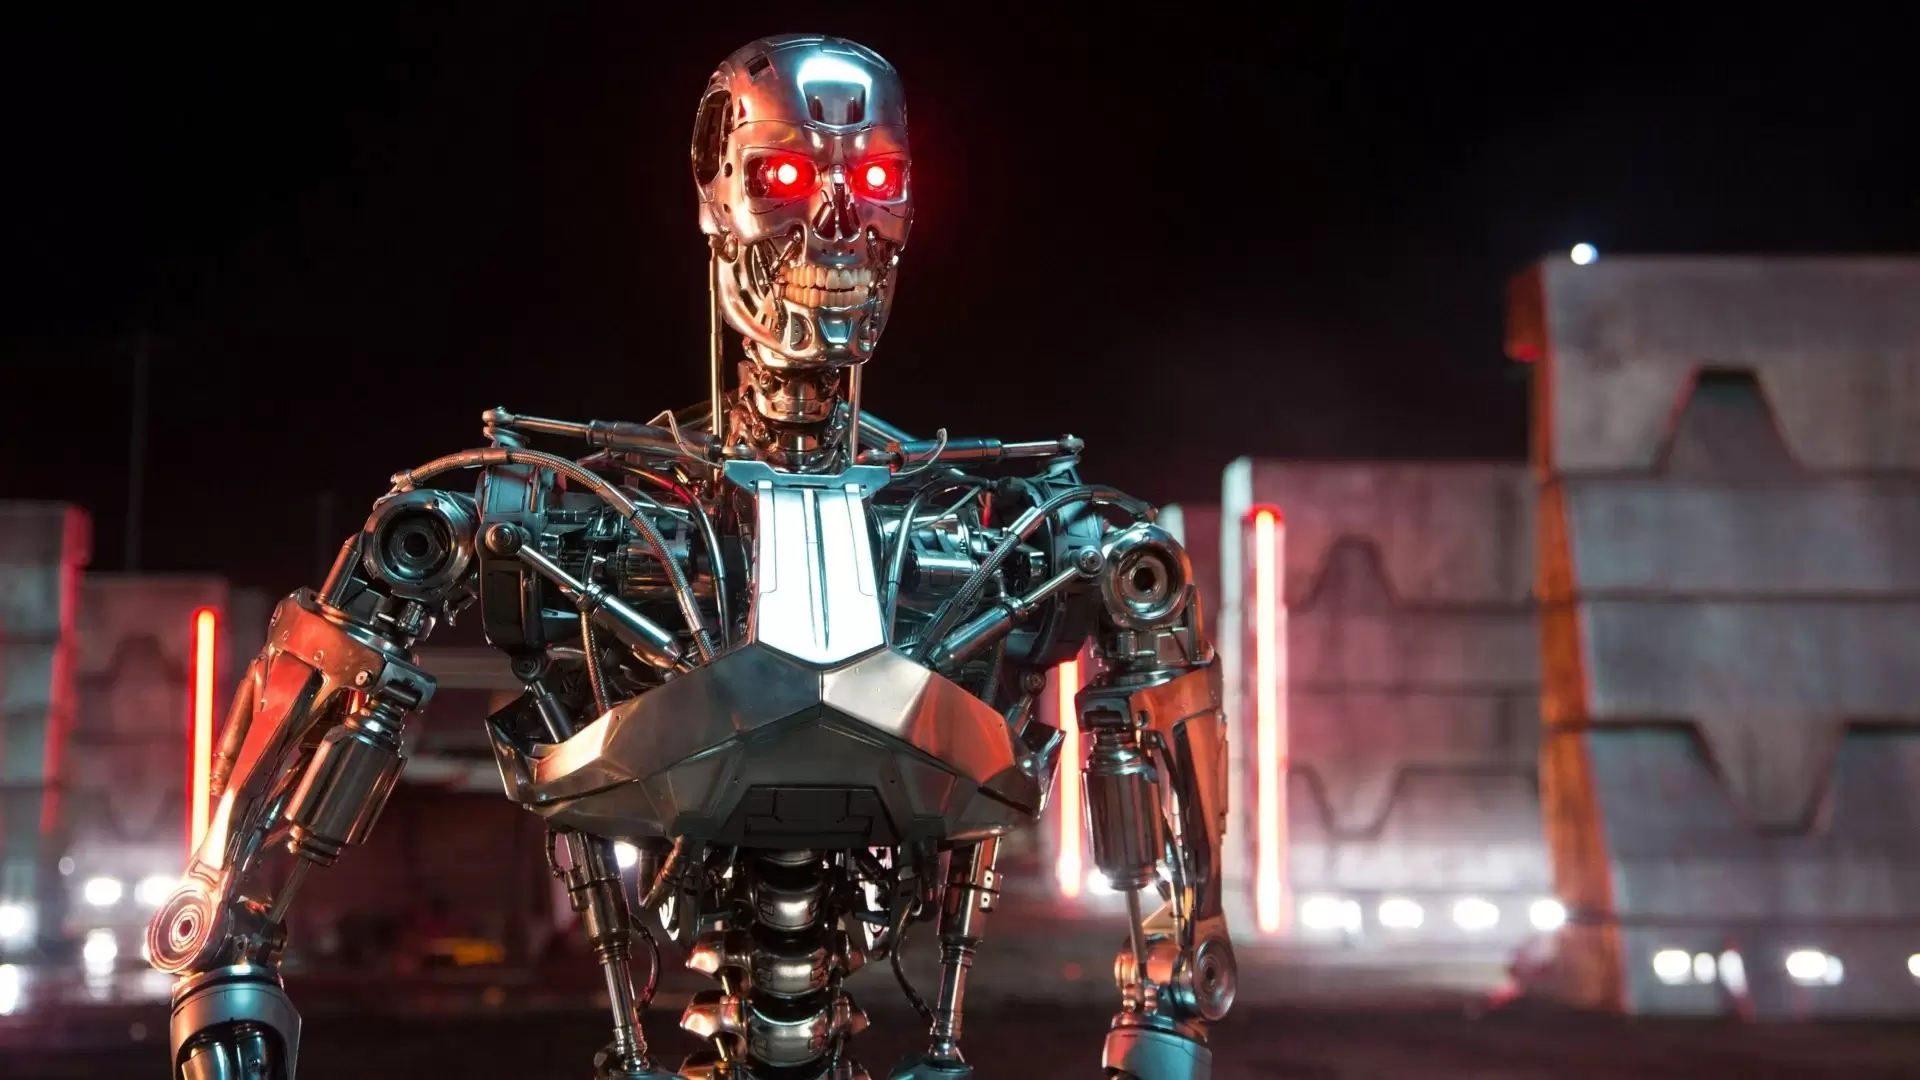 دانلود فیلم Terminator Genisys 2015 (نابودگر: جنسیس) با زیرنویس فارسی و تماشای آنلاین